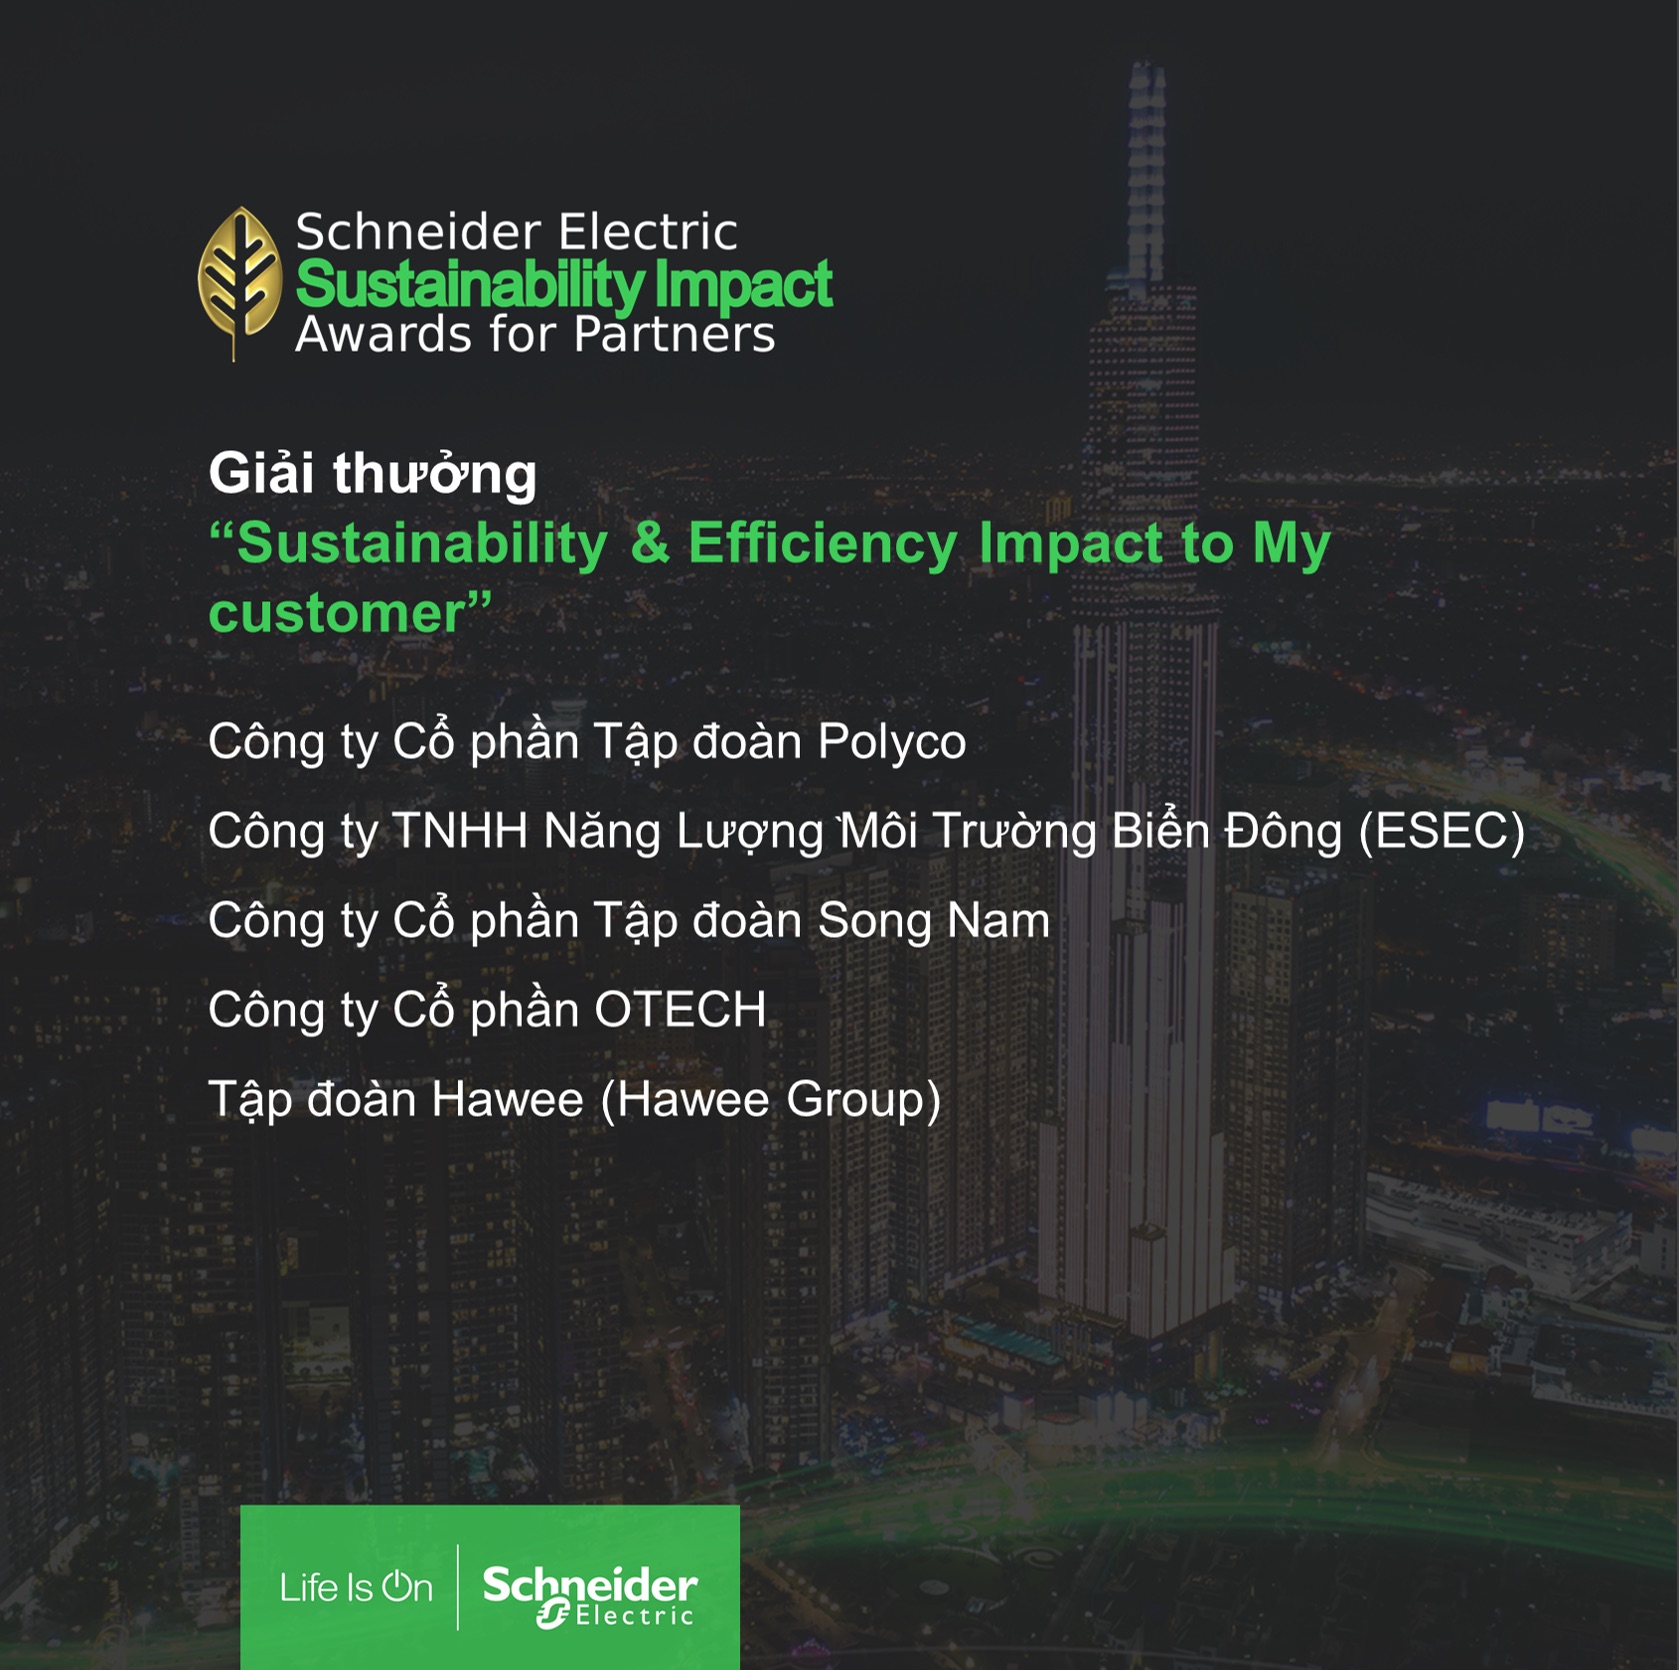 Schneider Electric vinh danh 11 "Green Heroes" chung tay đổi mới sáng tạo vì một Việt Nam phát triển bền vững